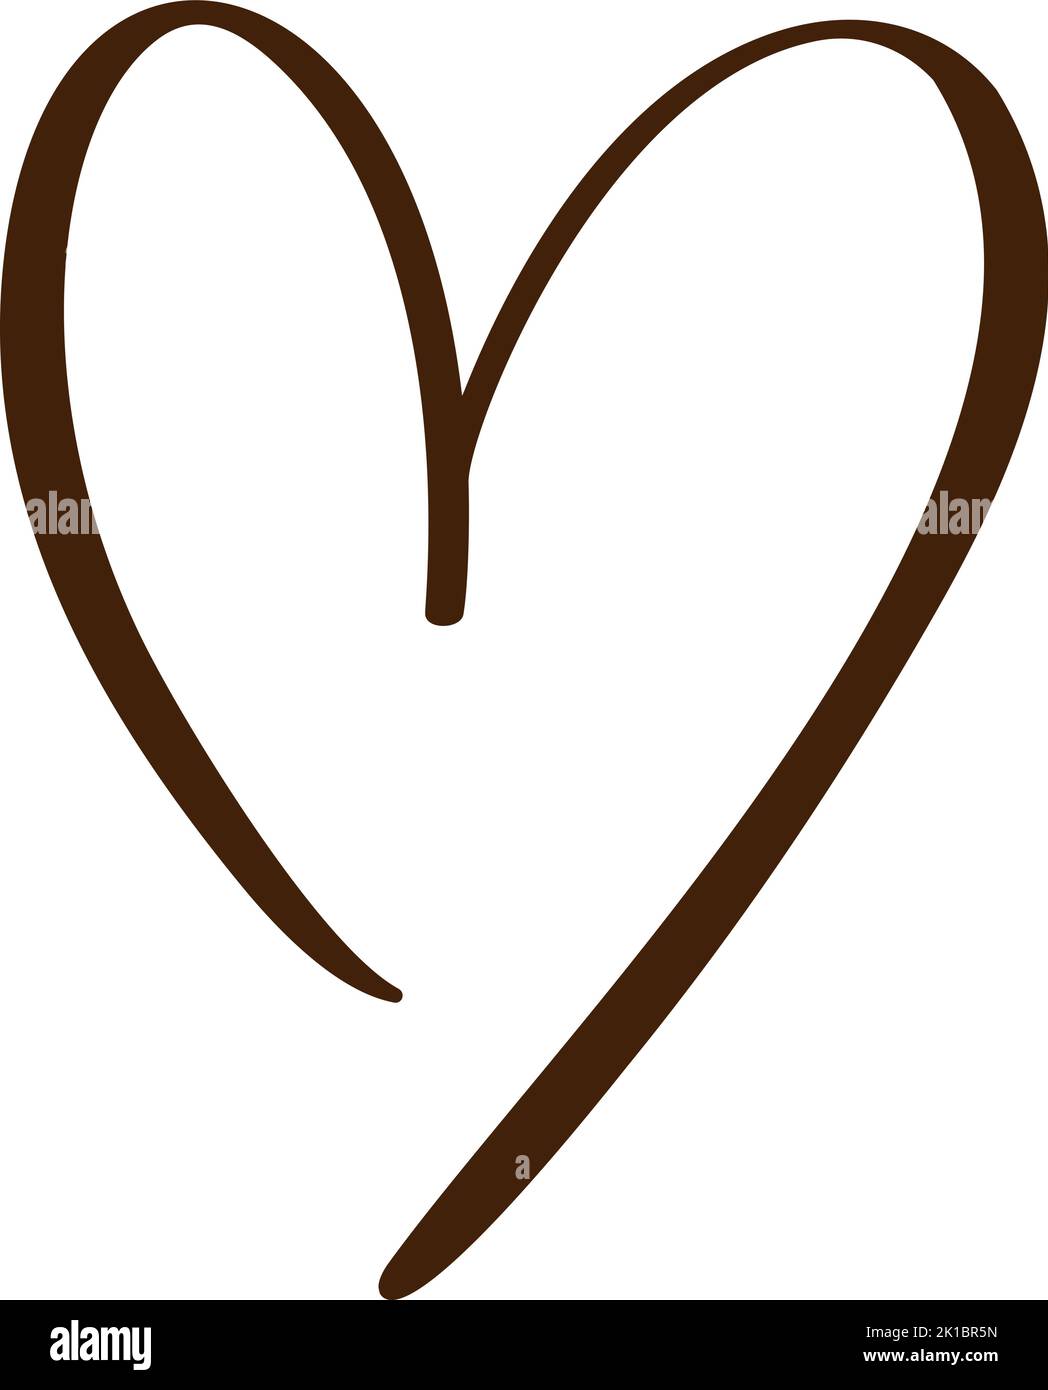 Logo calligrafico Love Heart. Vettore Romantico illustrazione simbolo unire, passione e matrimonio. Calligraphy Design elemento piatto di San Valentino giorno Illustrazione Vettoriale